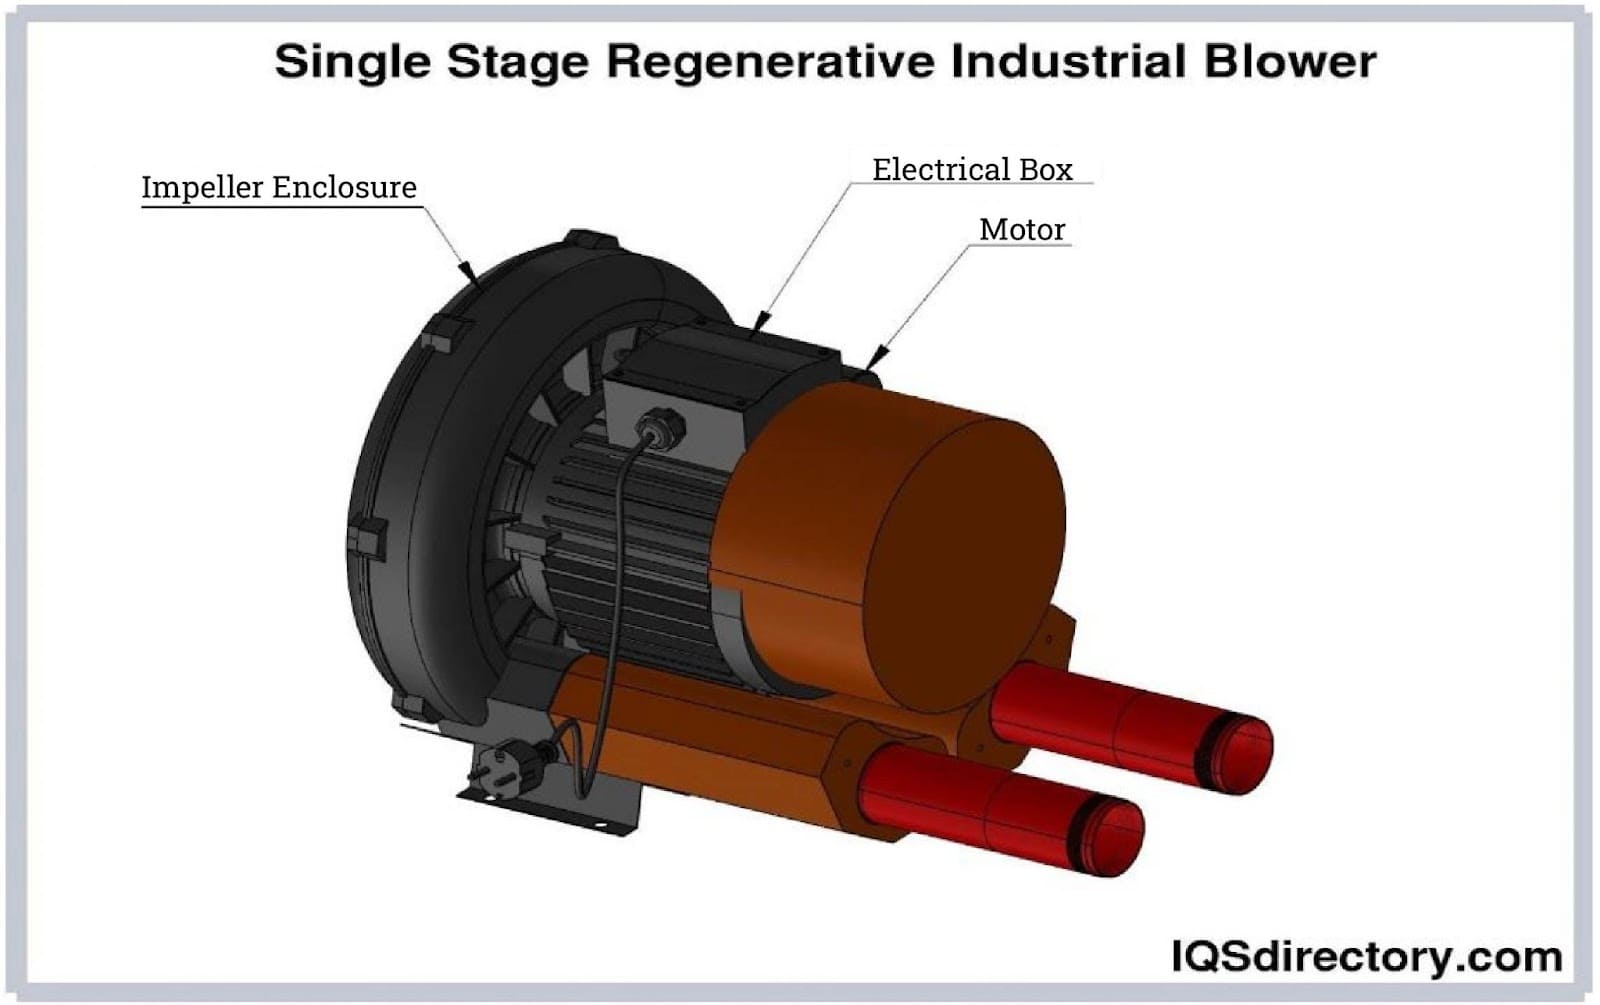 Single Stage Regenerative Industrial Blower